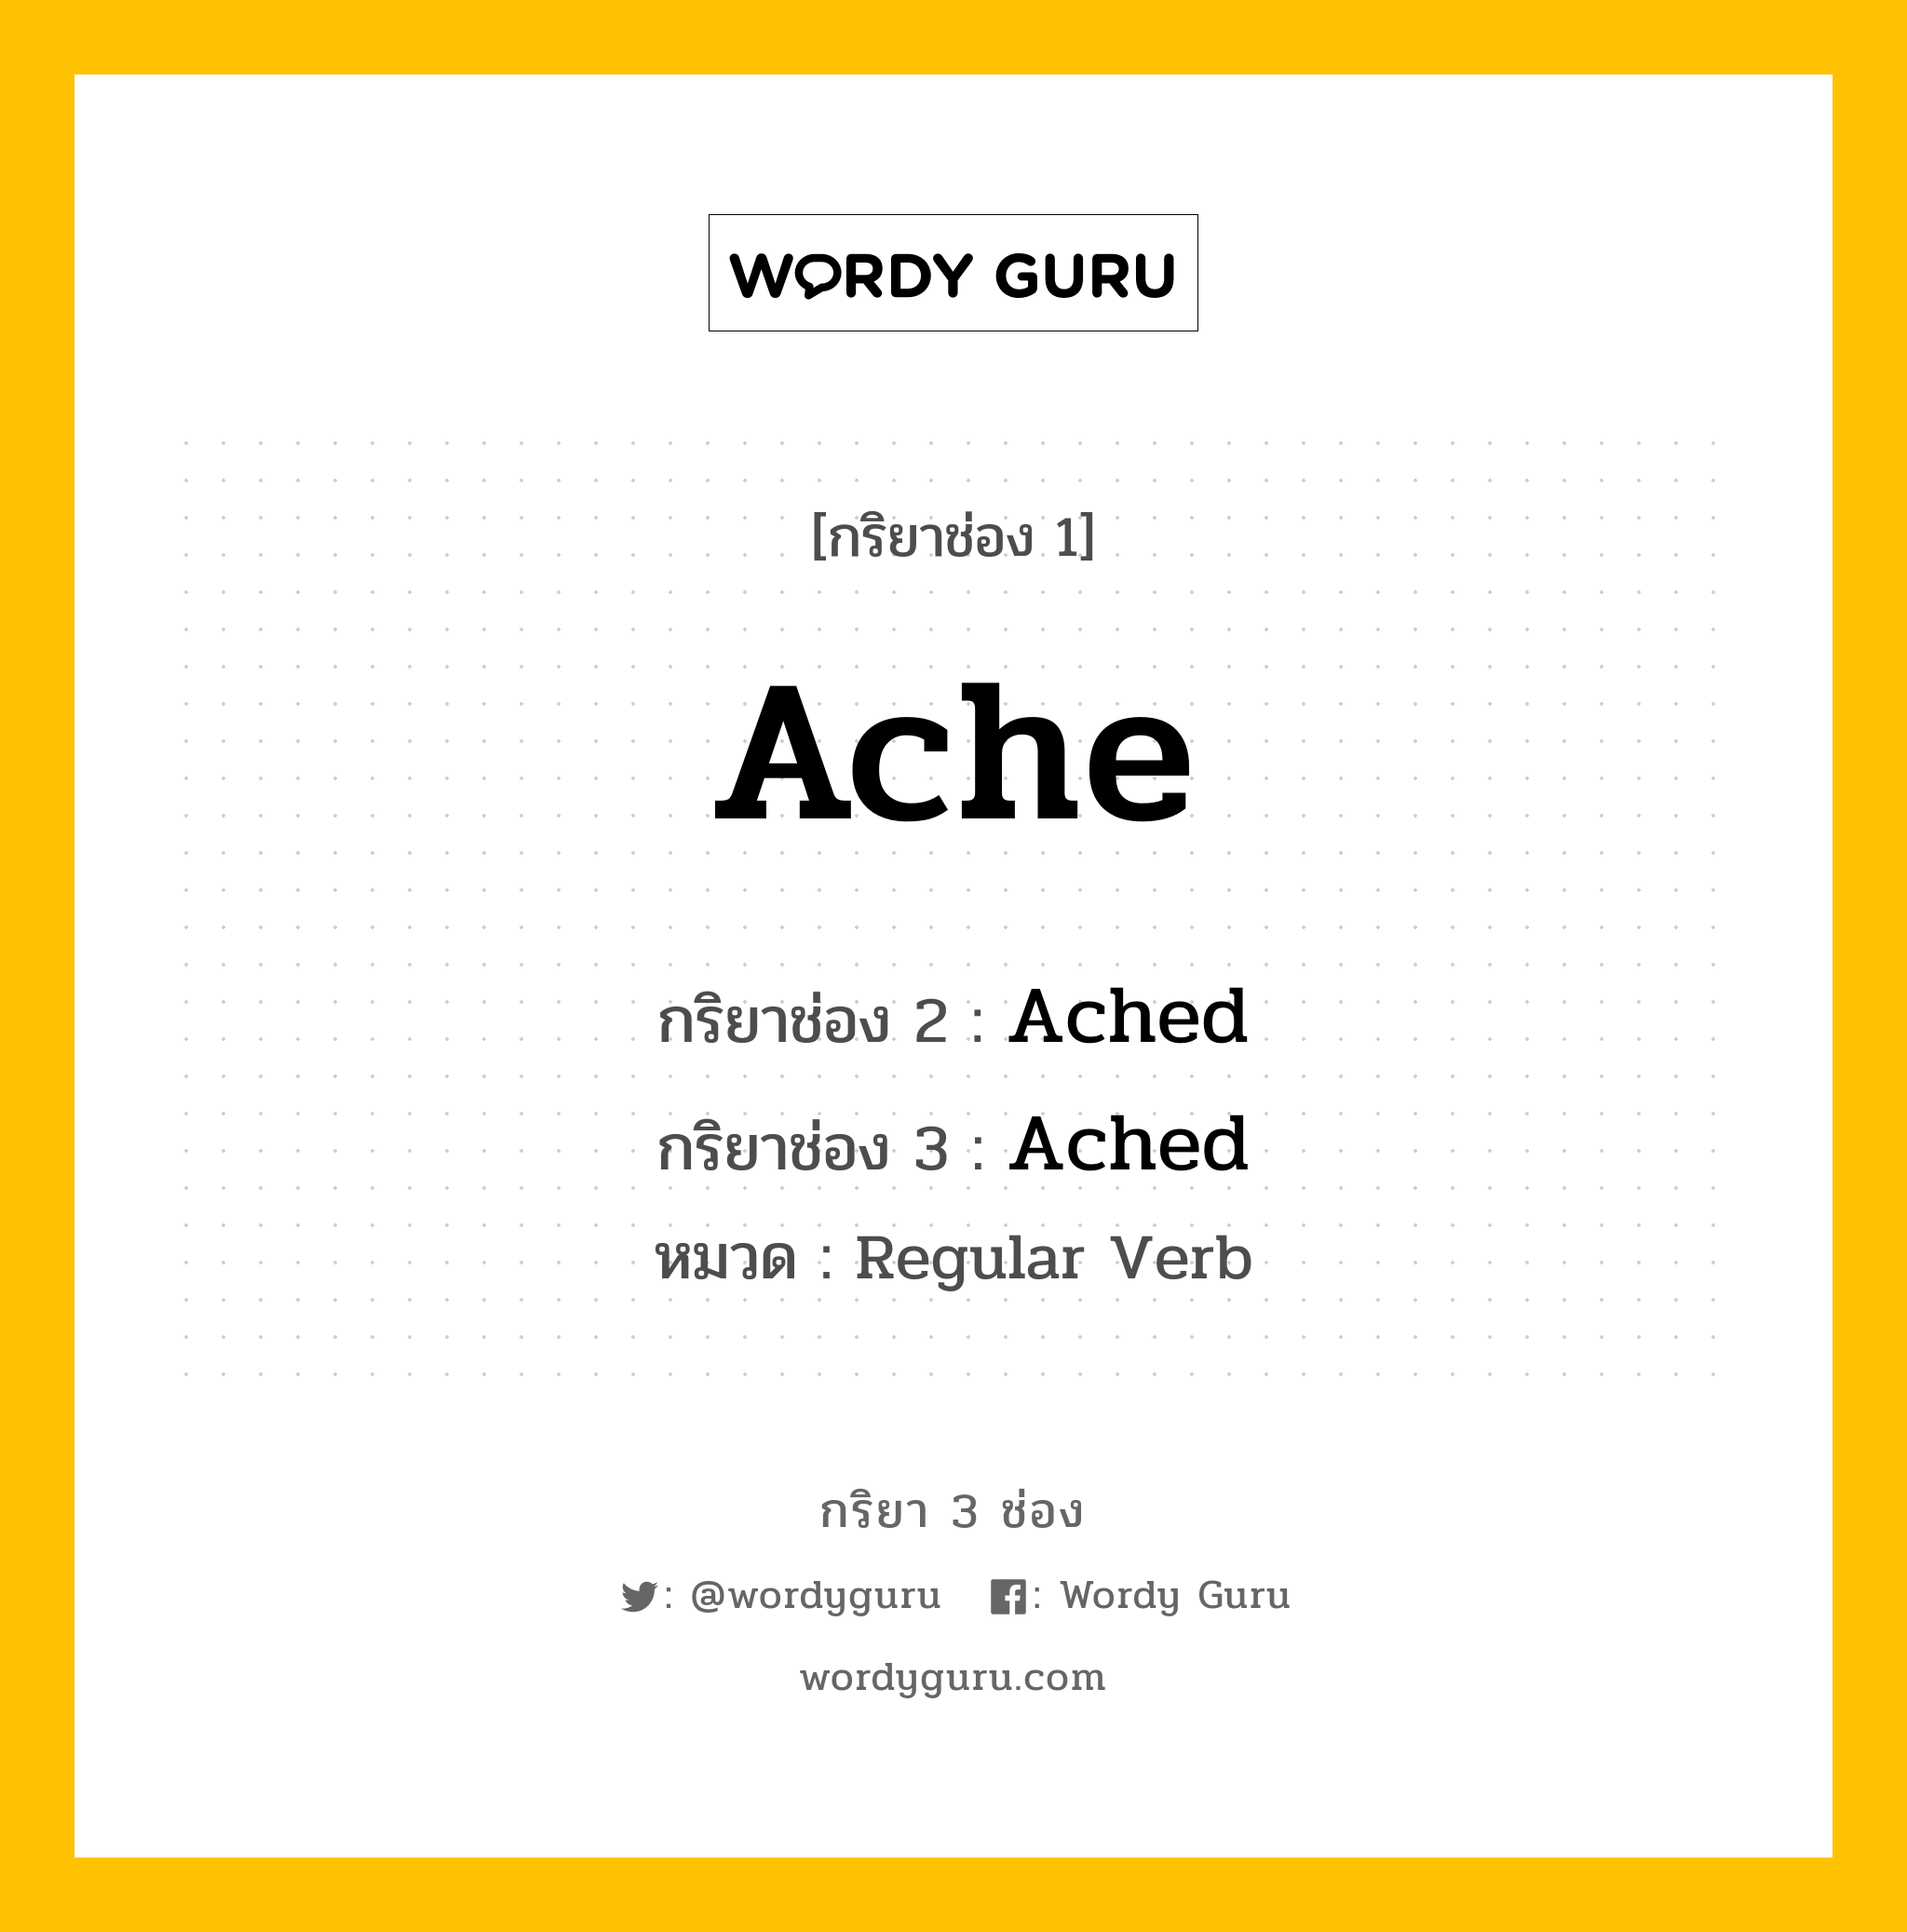 Ache มีกริยา 3 ช่องอะไรบ้าง? คำศัพท์ในกลุ่มประเภท Regular Verb, กริยาช่อง 1 Ache กริยาช่อง 2 Ached กริยาช่อง 3 Ached หมวด Regular Verb หมวด Regular Verb